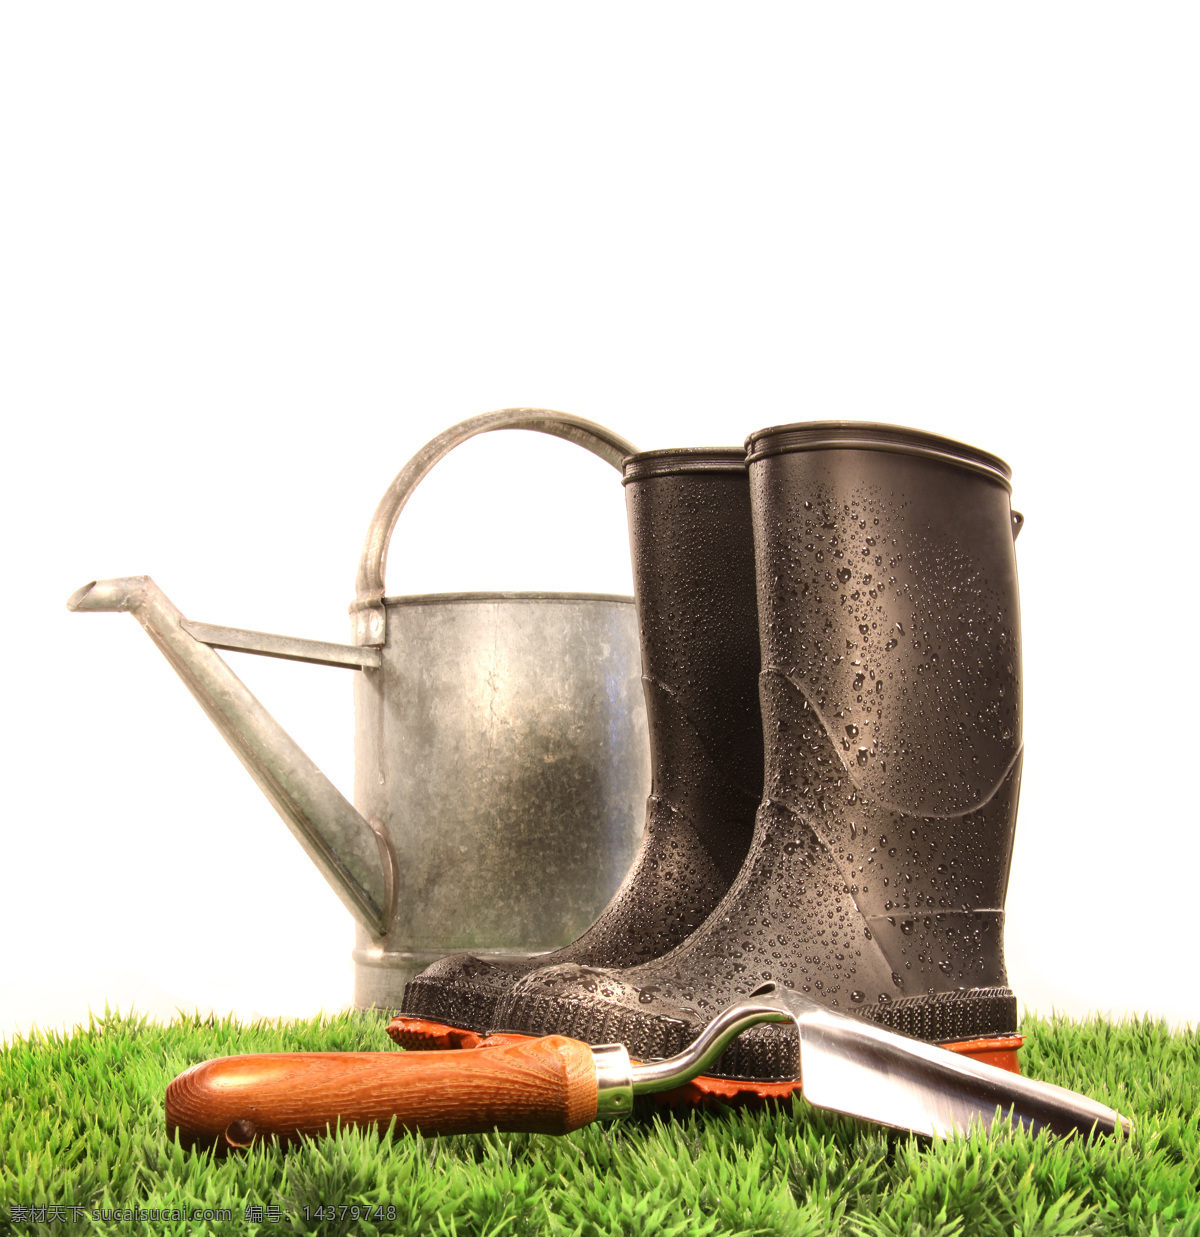 喷壶 雨靴 铁锹 铲子 园艺工具 其他类别 生活百科